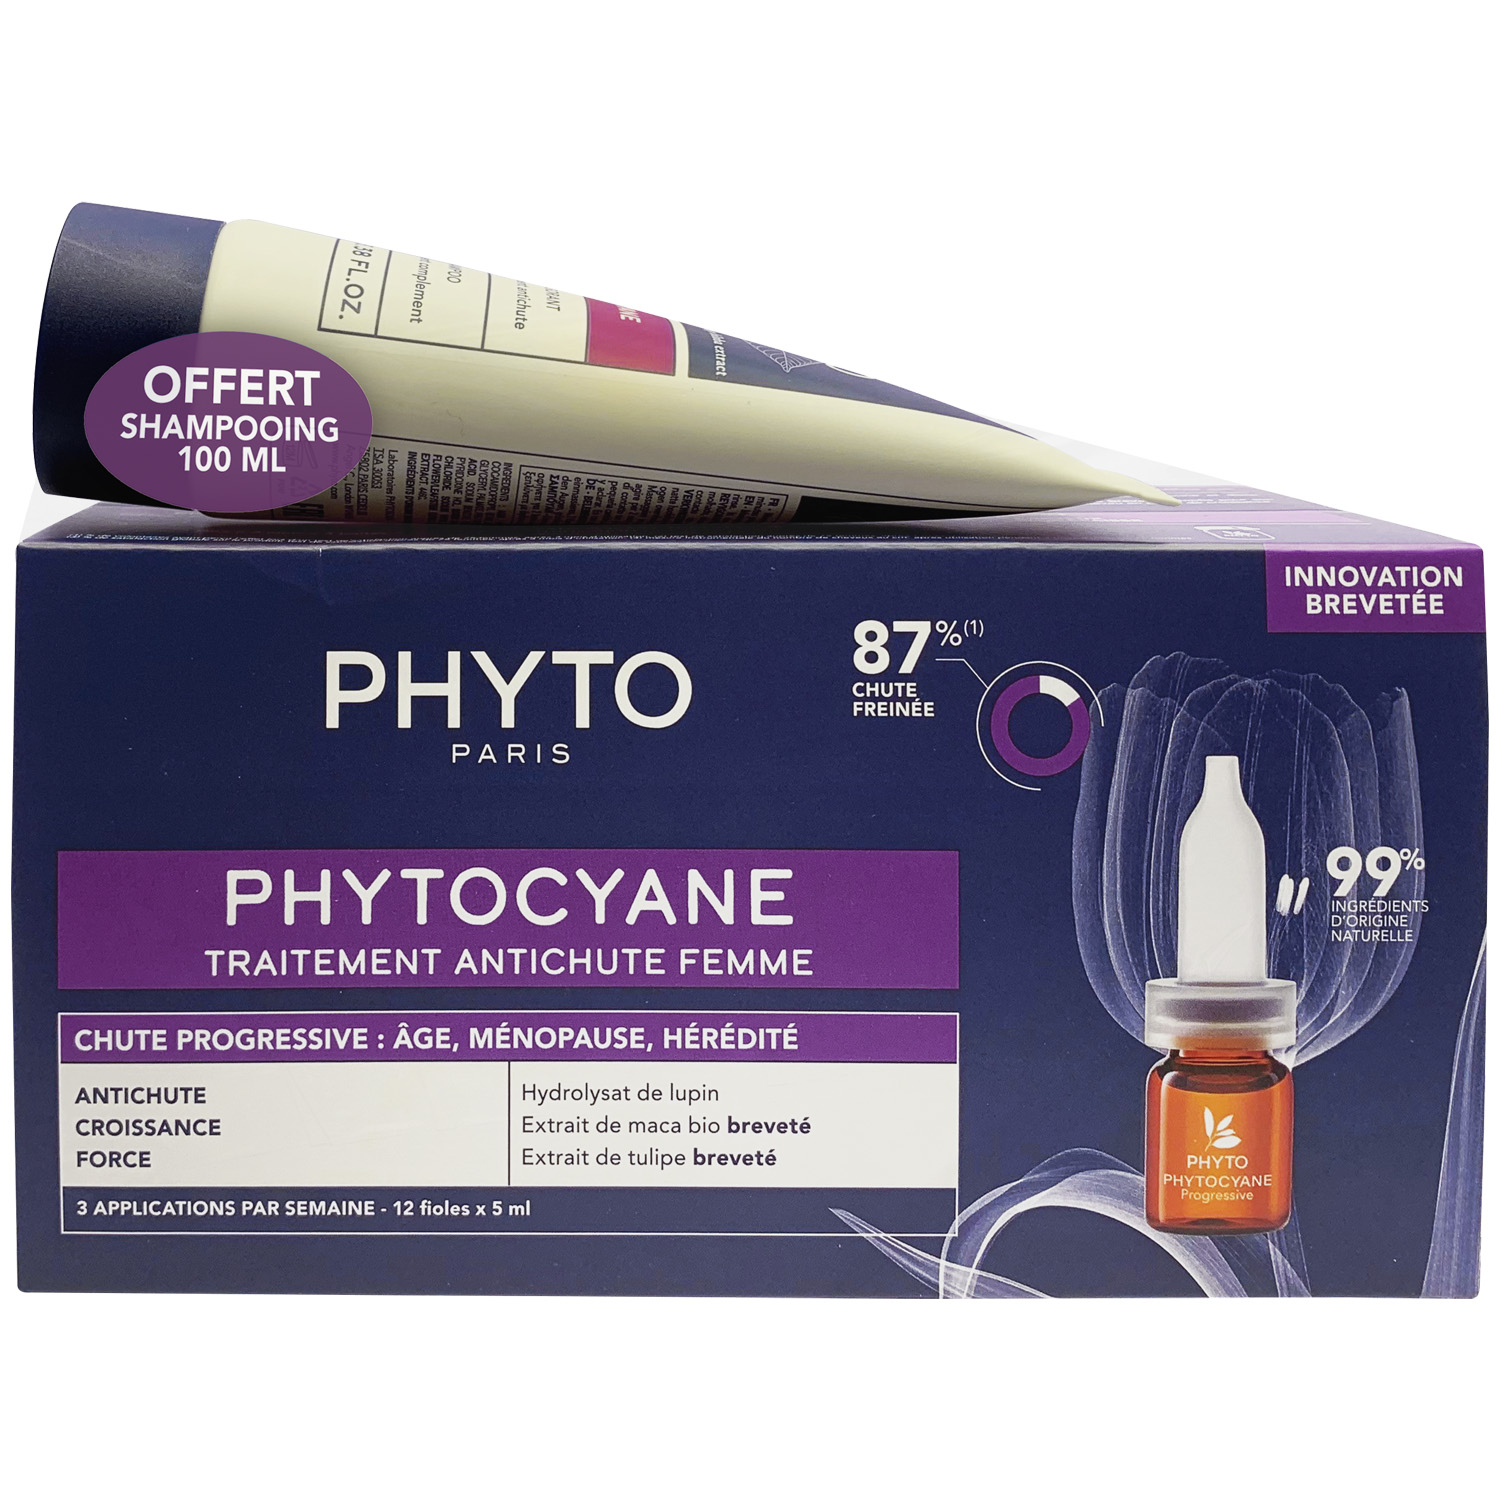 Phyto Набор для женщин: сыворотка от выпадения волос 12х 5мл + укрепляющий шампунь 100 мл (Phyto, Phytocyane) phyto сыворотка против выпадения волос для женщин 12 флаконов х 5 мл phyto phytocyane